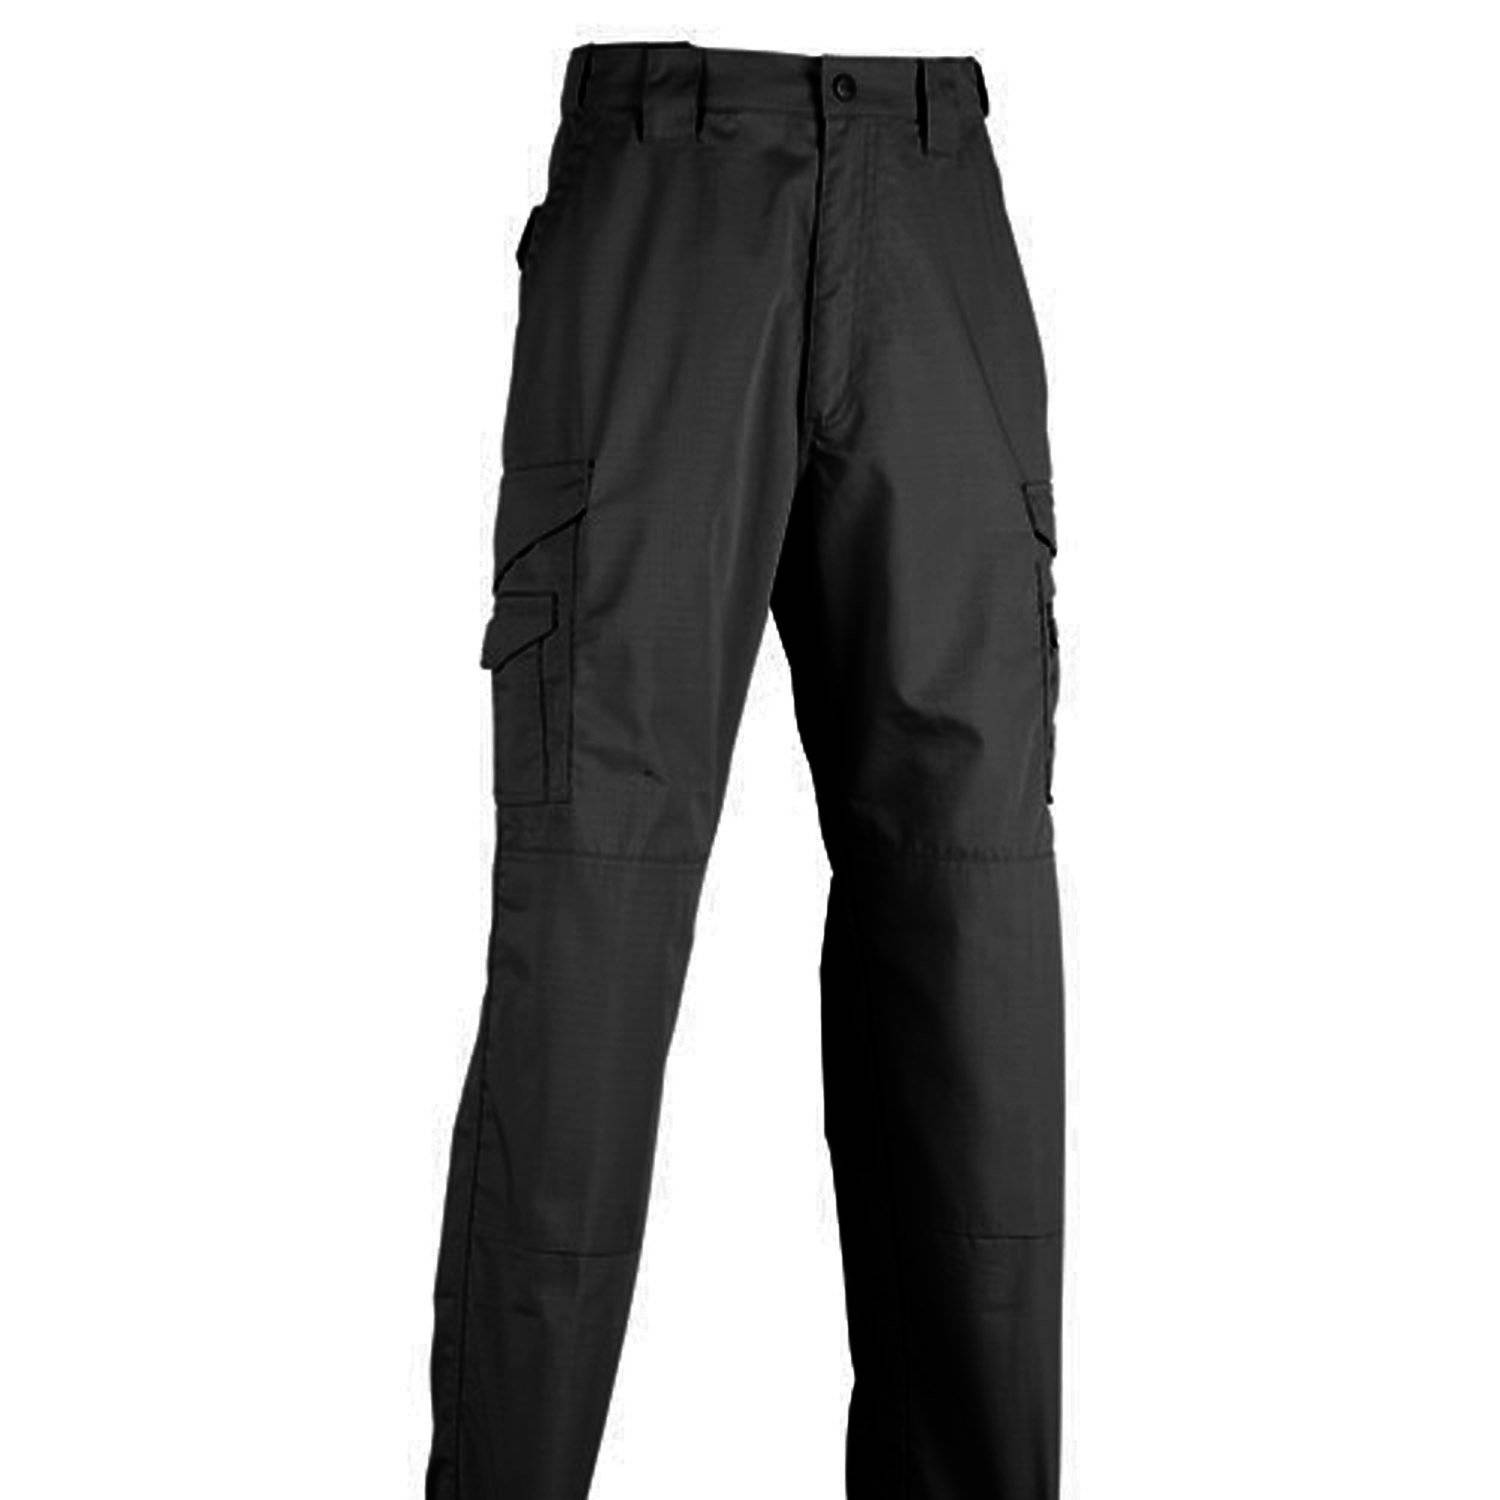 TRU-SPEC 24-7 Series Original Tactical Pants